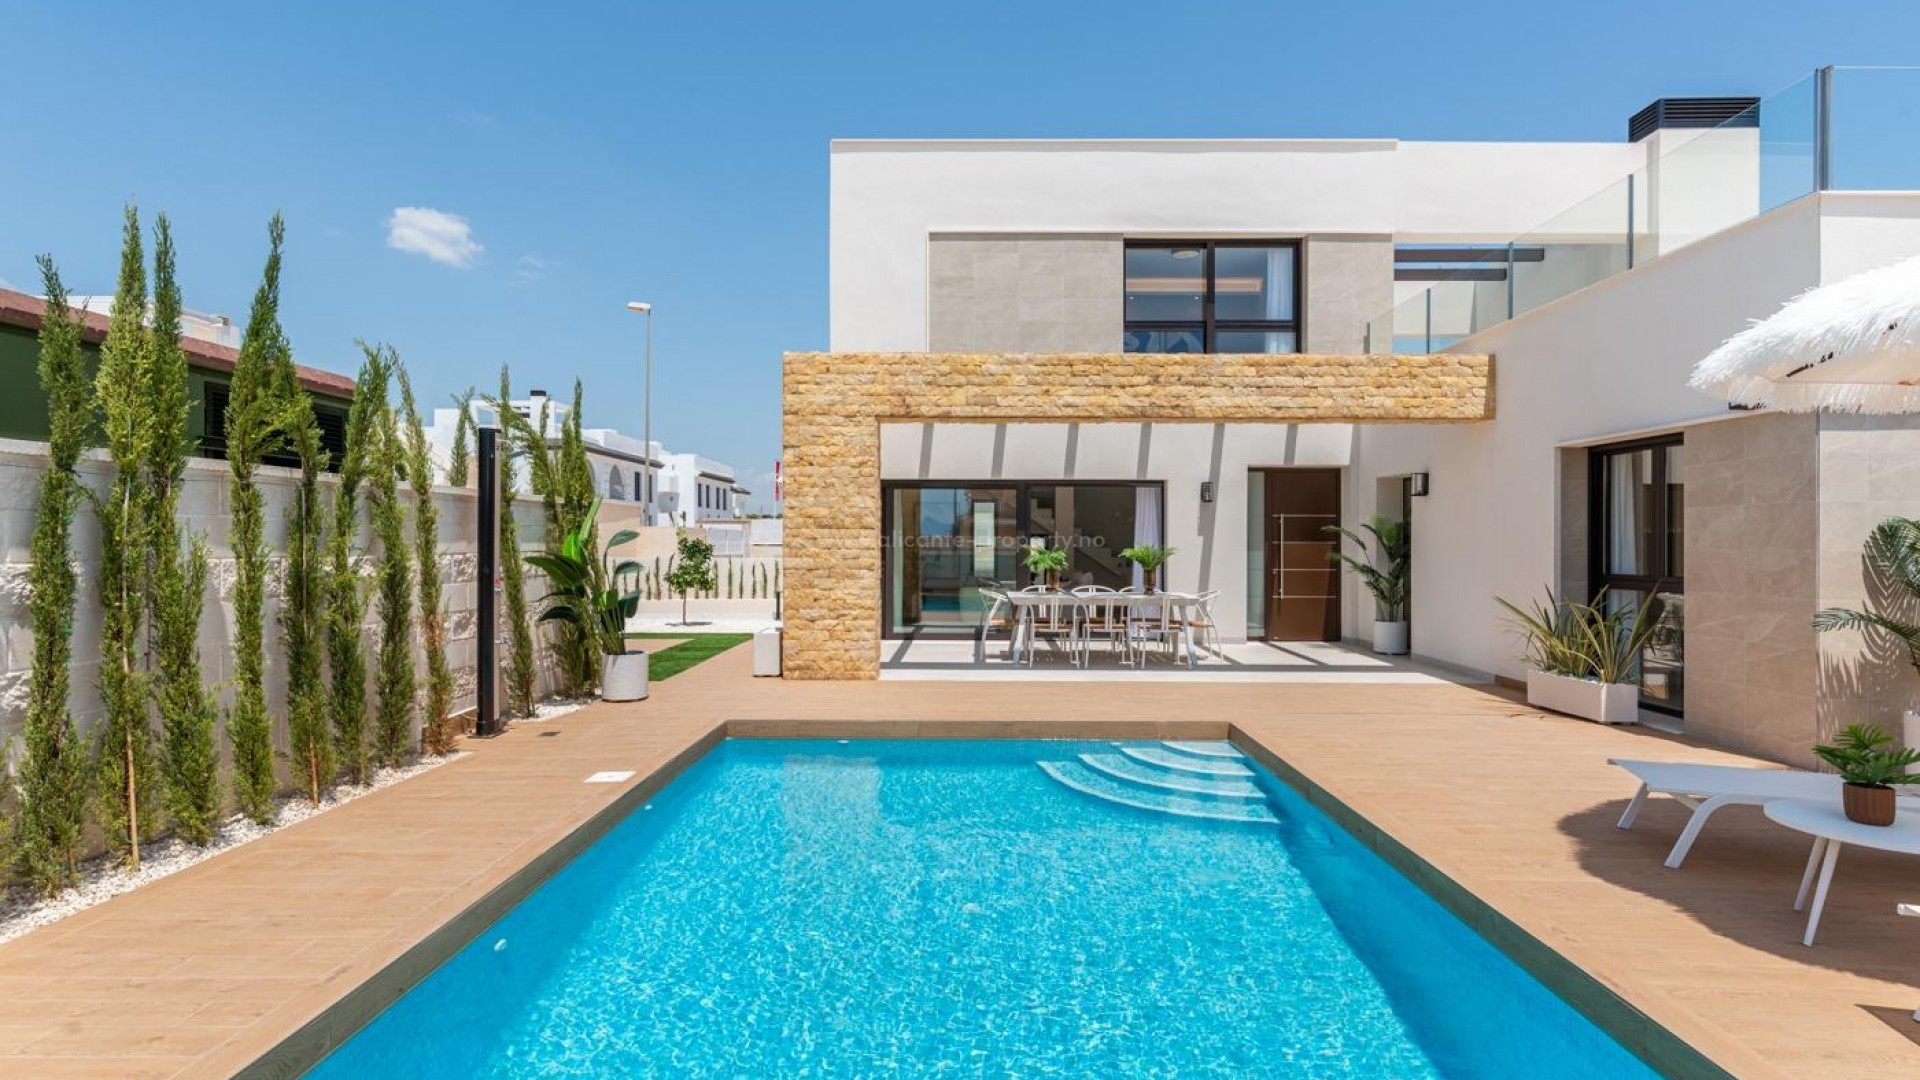 Ny luksus-villa i moderne stil med privat hage i Rojales, Ciudad Quesada, 3 soverom og 3 bad, stor terrasse, privat hage, svømmebasseng og parkeringsplass